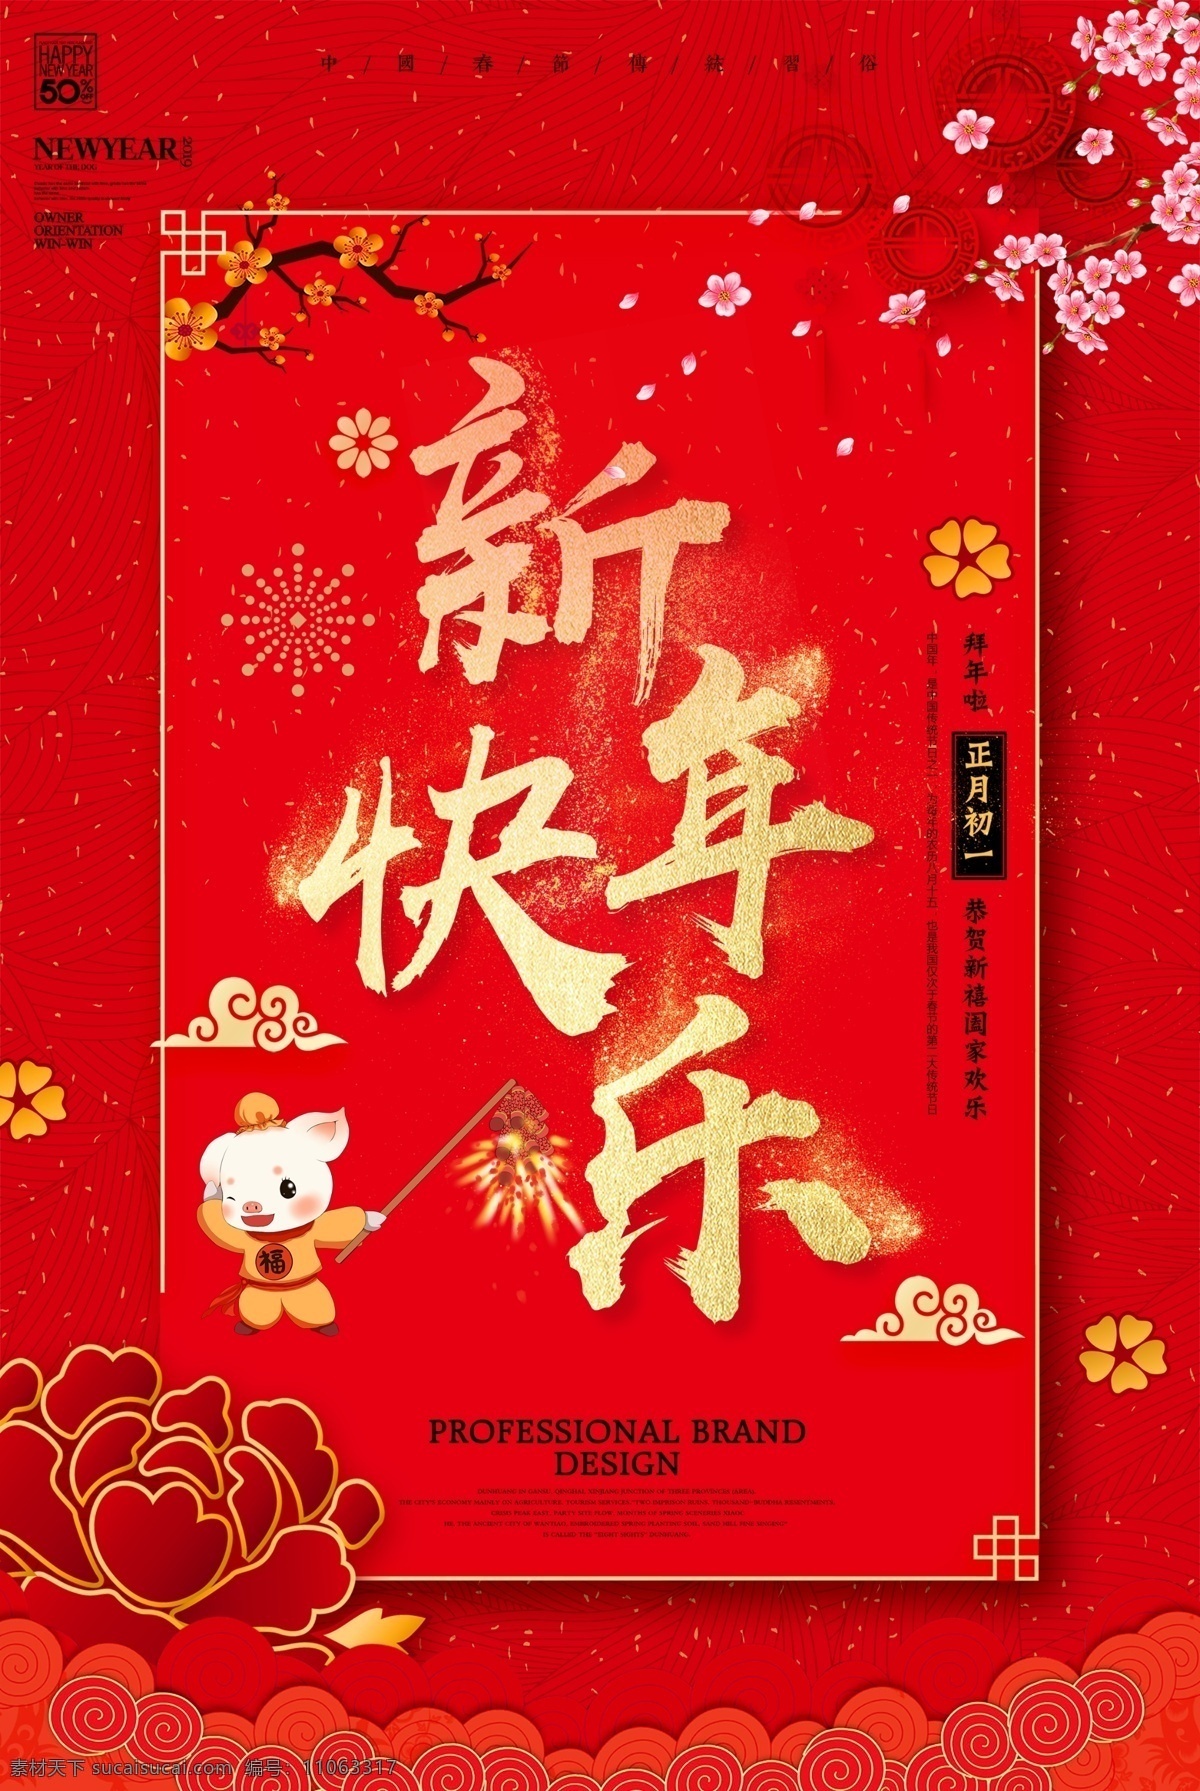 新年 快乐 节日 海报 新年快乐 节日海报 红色 正月初一 中国风 新春 春节 过年